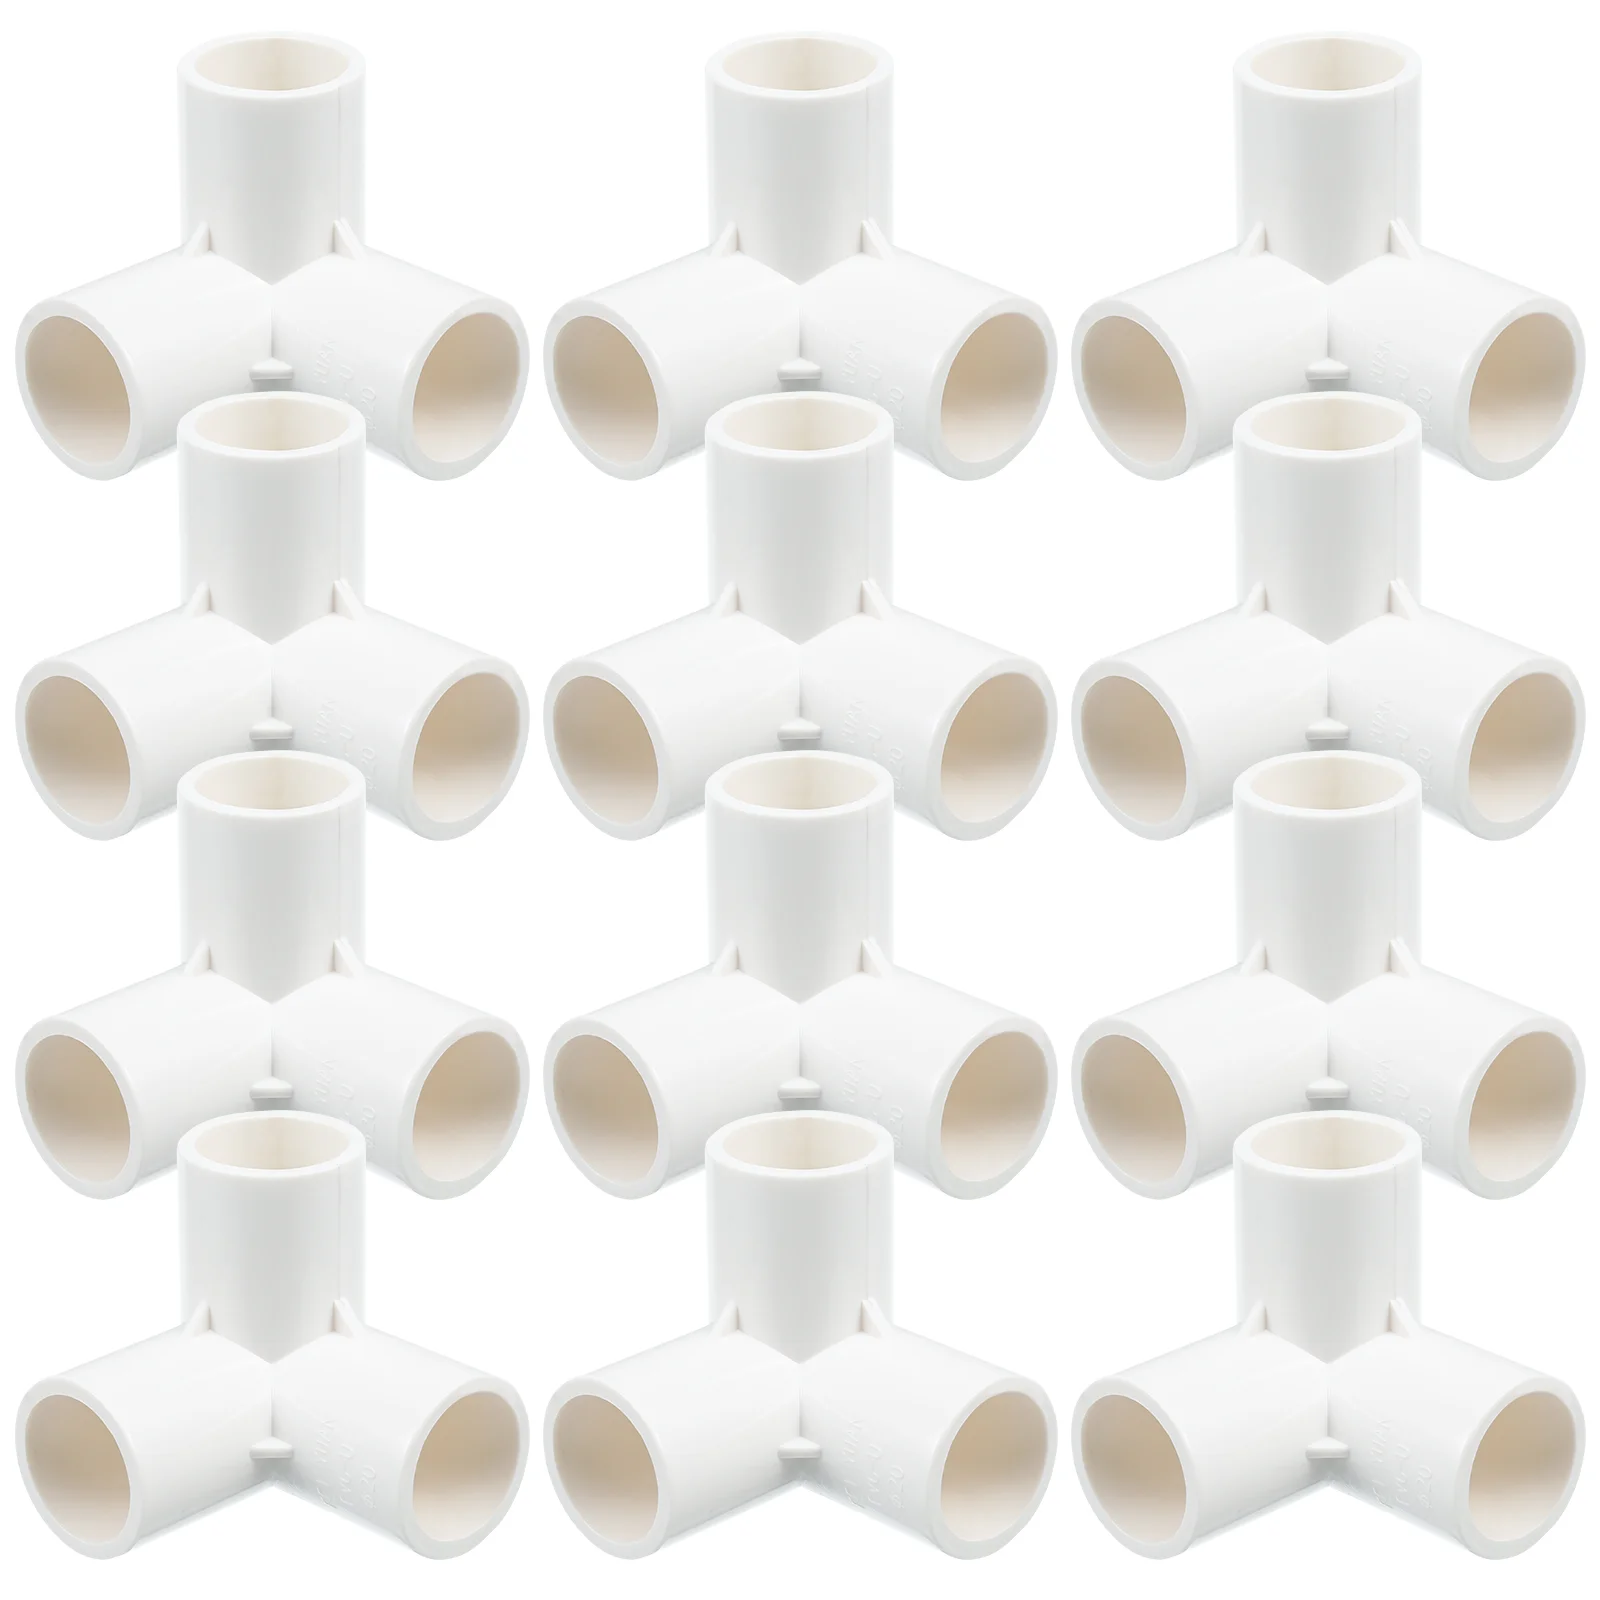 

8 шт., 1 пакет, трехсторонние соединения, простые трубные аксессуары, соединительные соединения (белые)